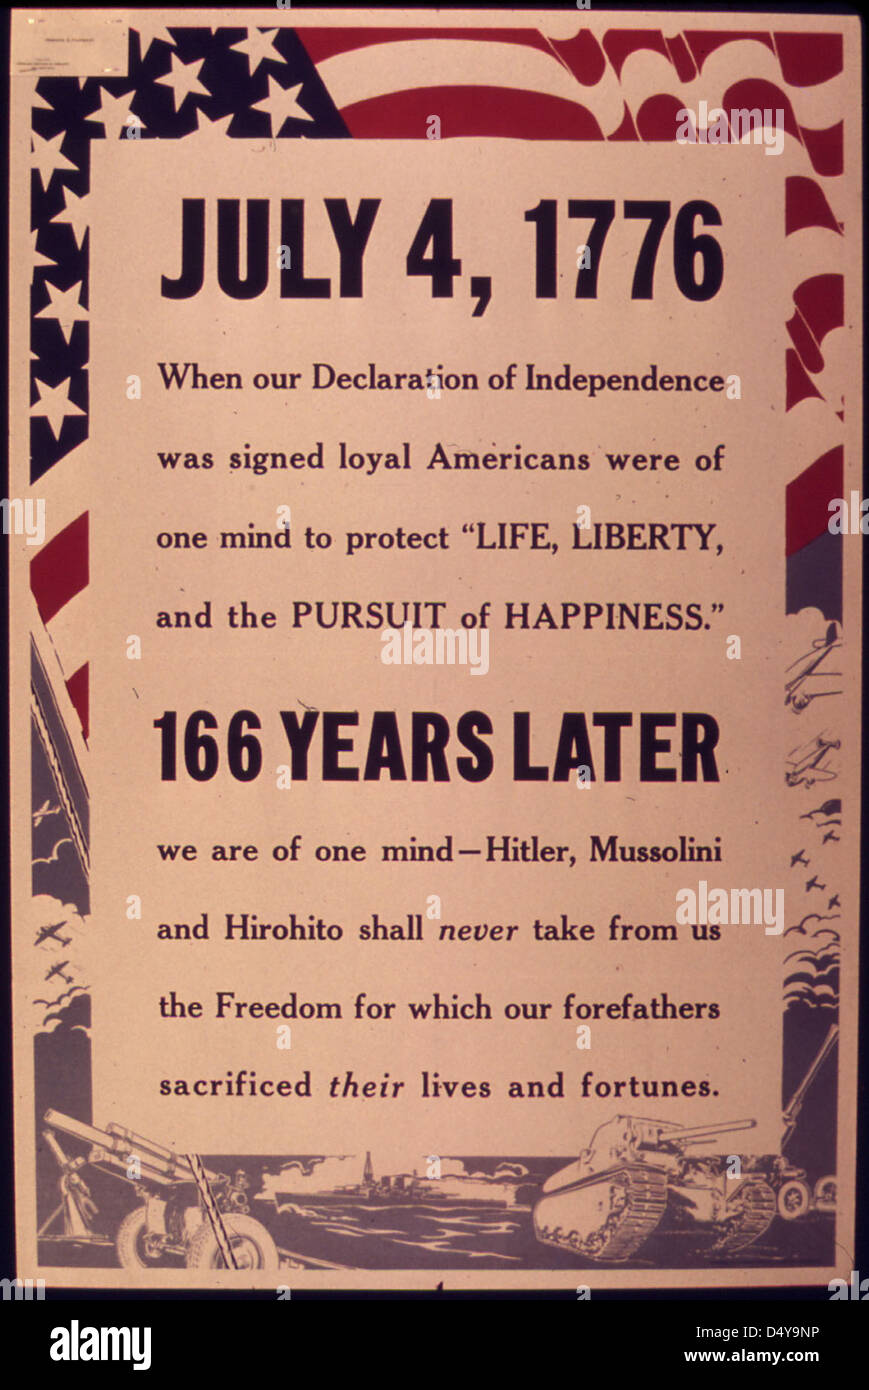 4 juillet 1776. Lorsque notre Déclaration d'Indepedence a été signée, les Américains loyaux étaient d'un seul esprit pour protéger la vie, la liberté, et la poursuite du bonheur. Banque D'Images